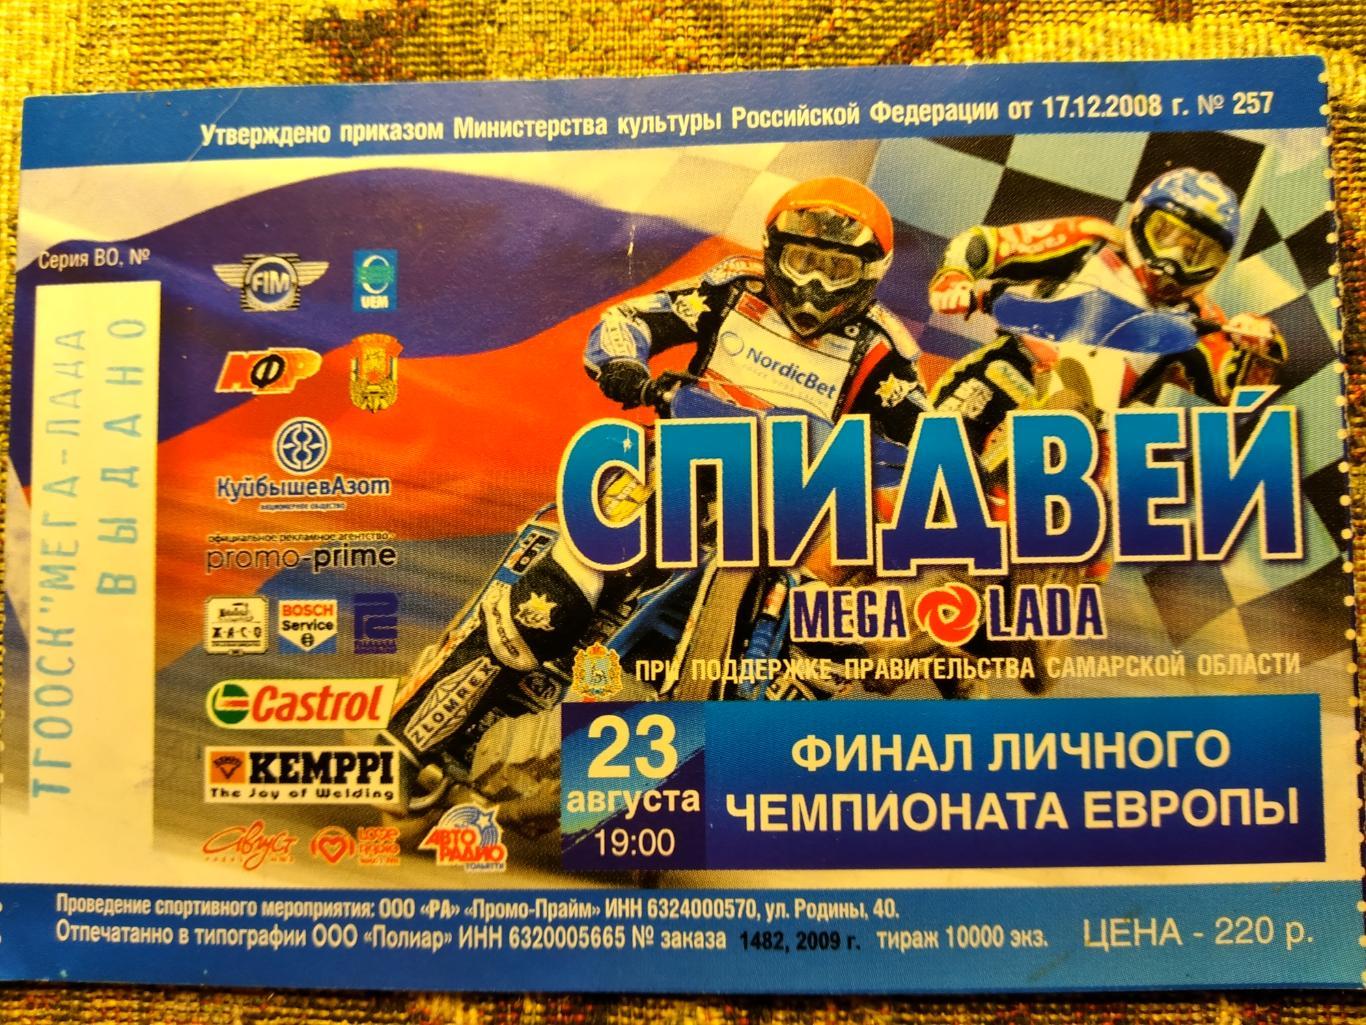 Билет на финал личного чемпионата Европы по спидвею 2009 г.Тольятти 23.08.2009г.